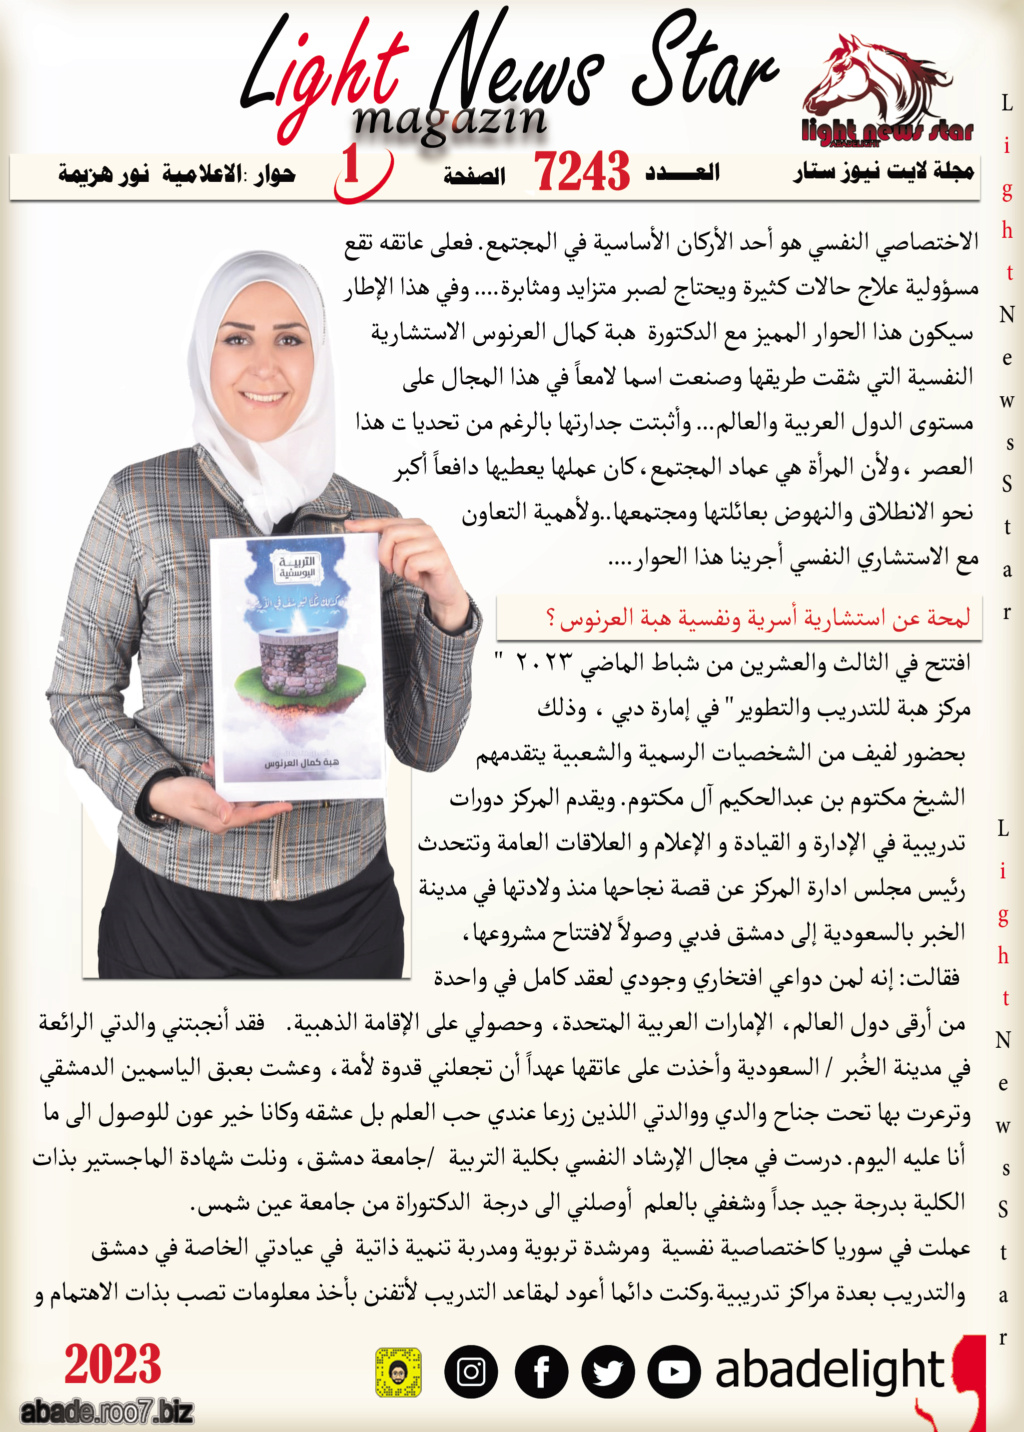 نجمة غلاف لايت نيوز ستار الدكتورة هبة العرنوس Aoo163